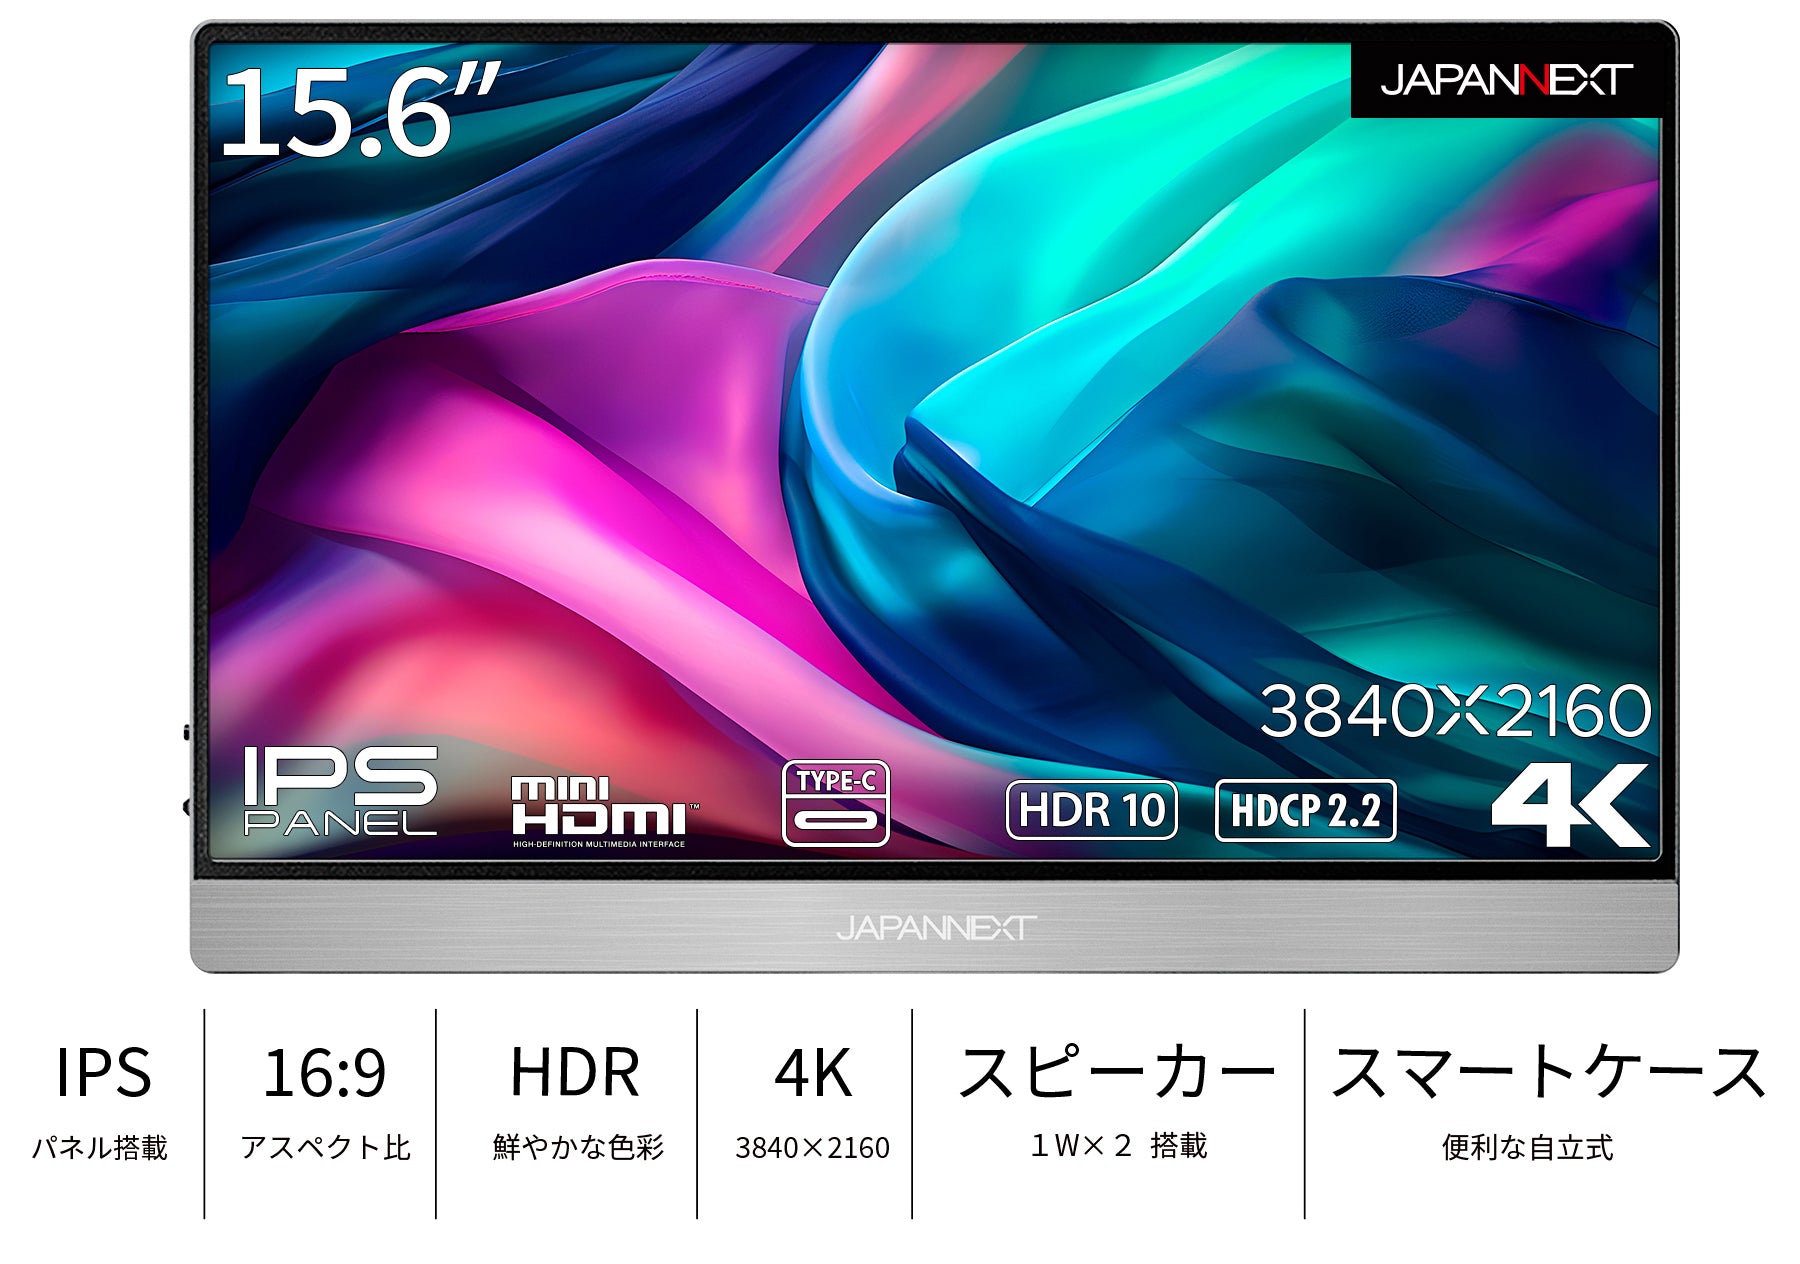 JAPANNEXT 15.6インチIPSパネル 4K(3840x2160)解像度 モバイルモニター ...